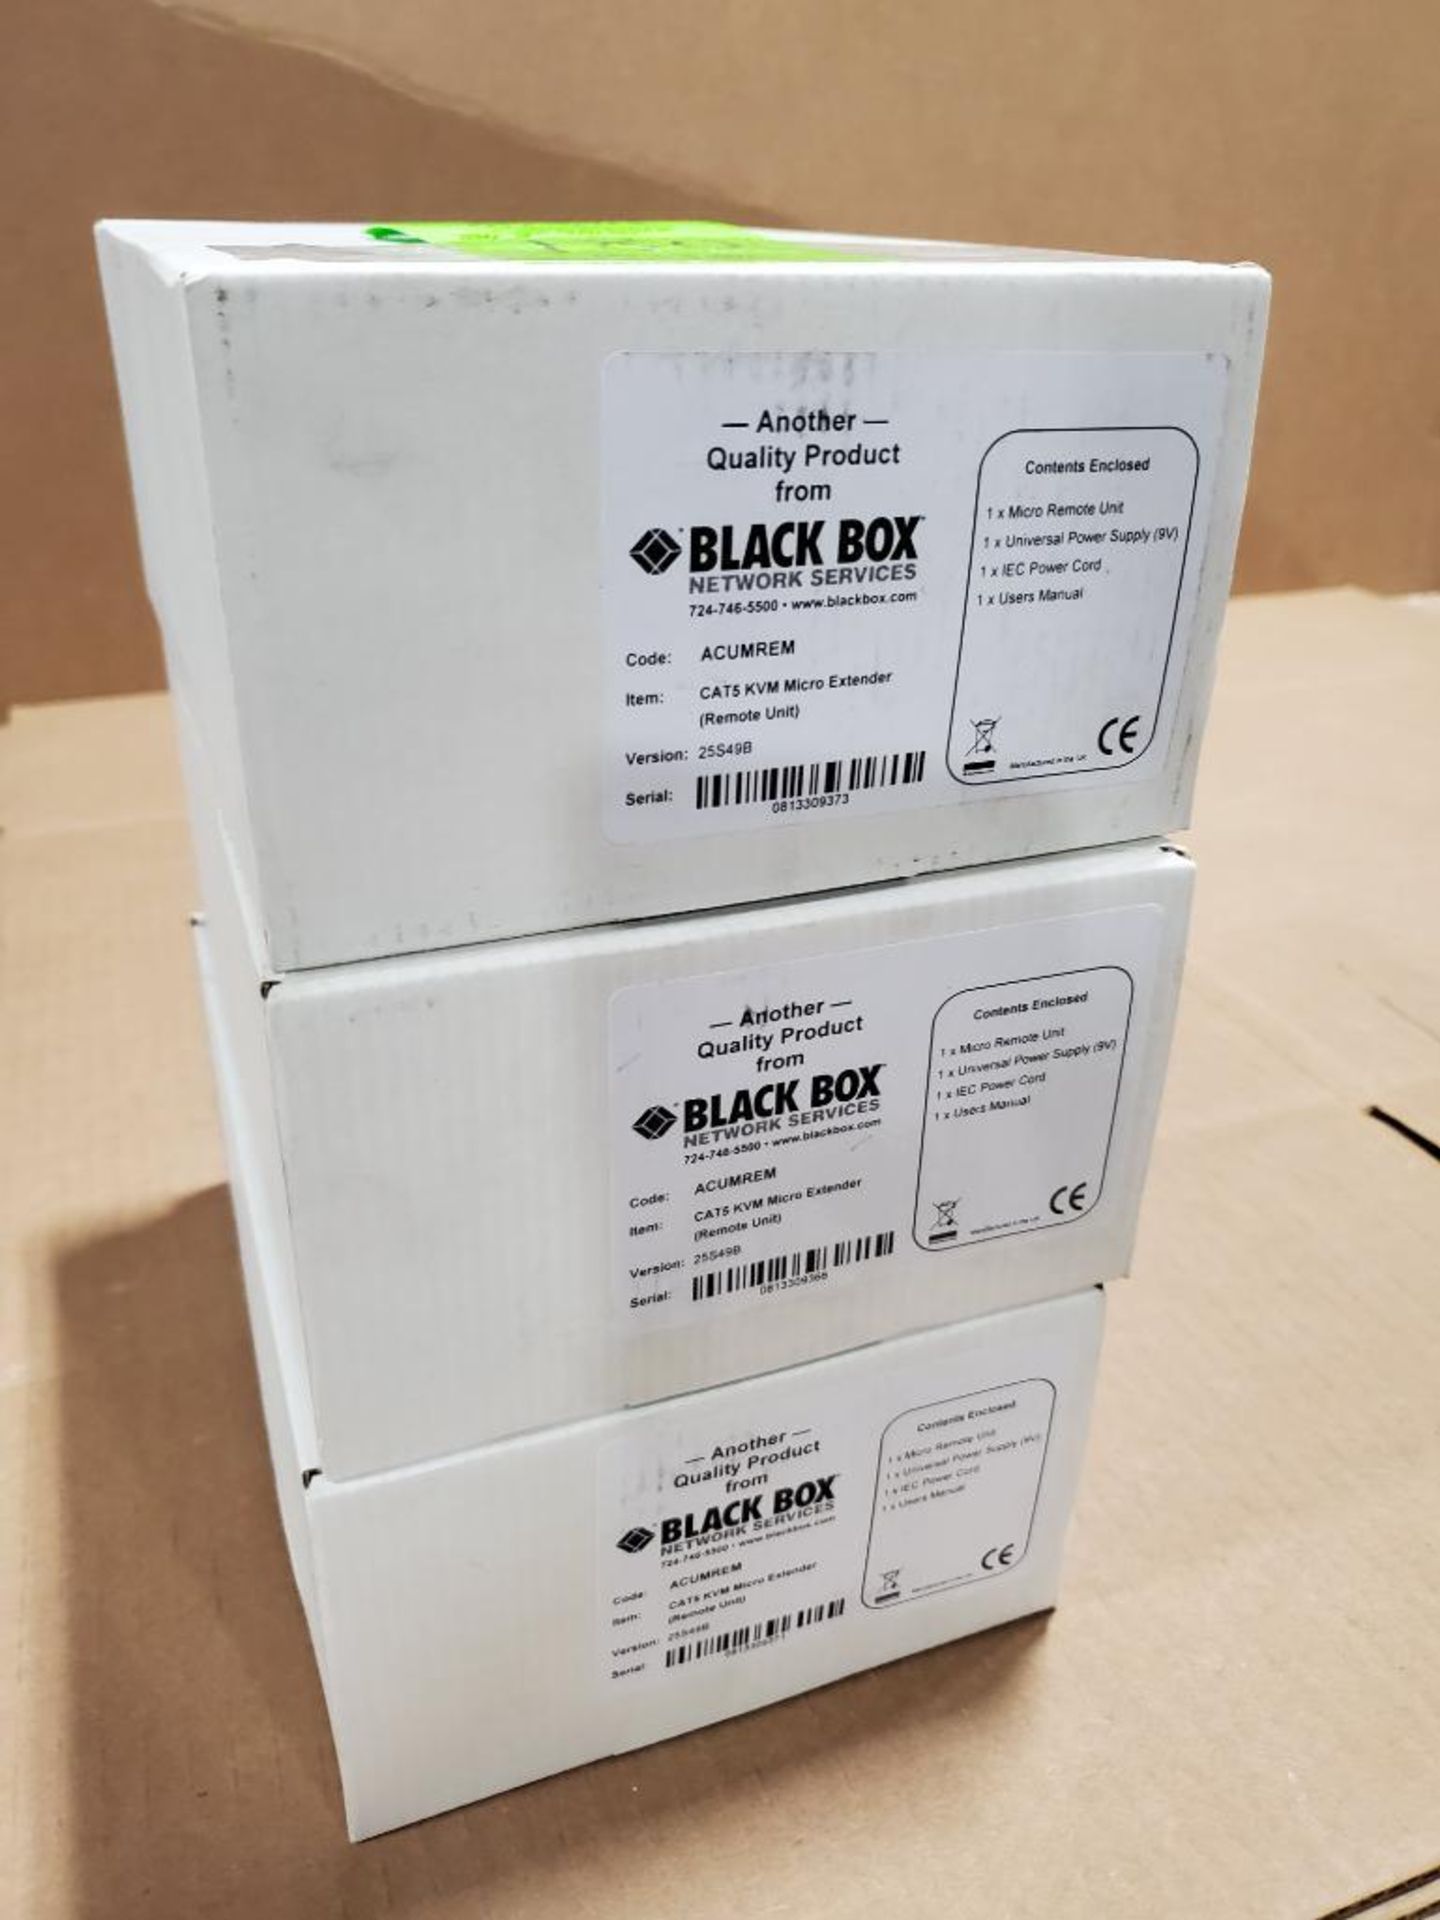 Qty 3 - Black Box Cat5 KVM micro extender remote unit. Part number ACUMREM.